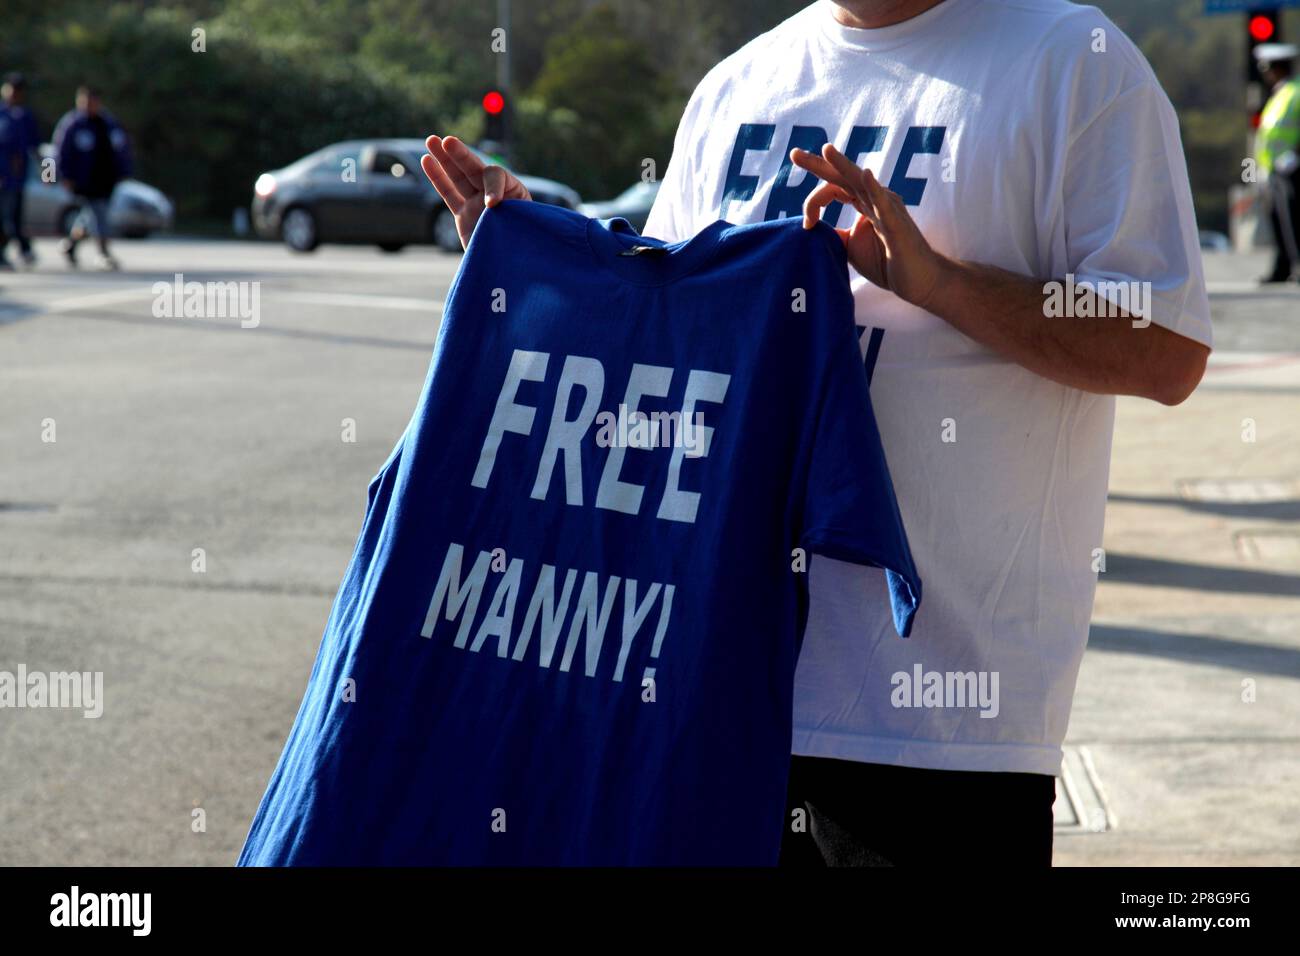 Manny Ramirez Suspended 50 Games for Drug Violation